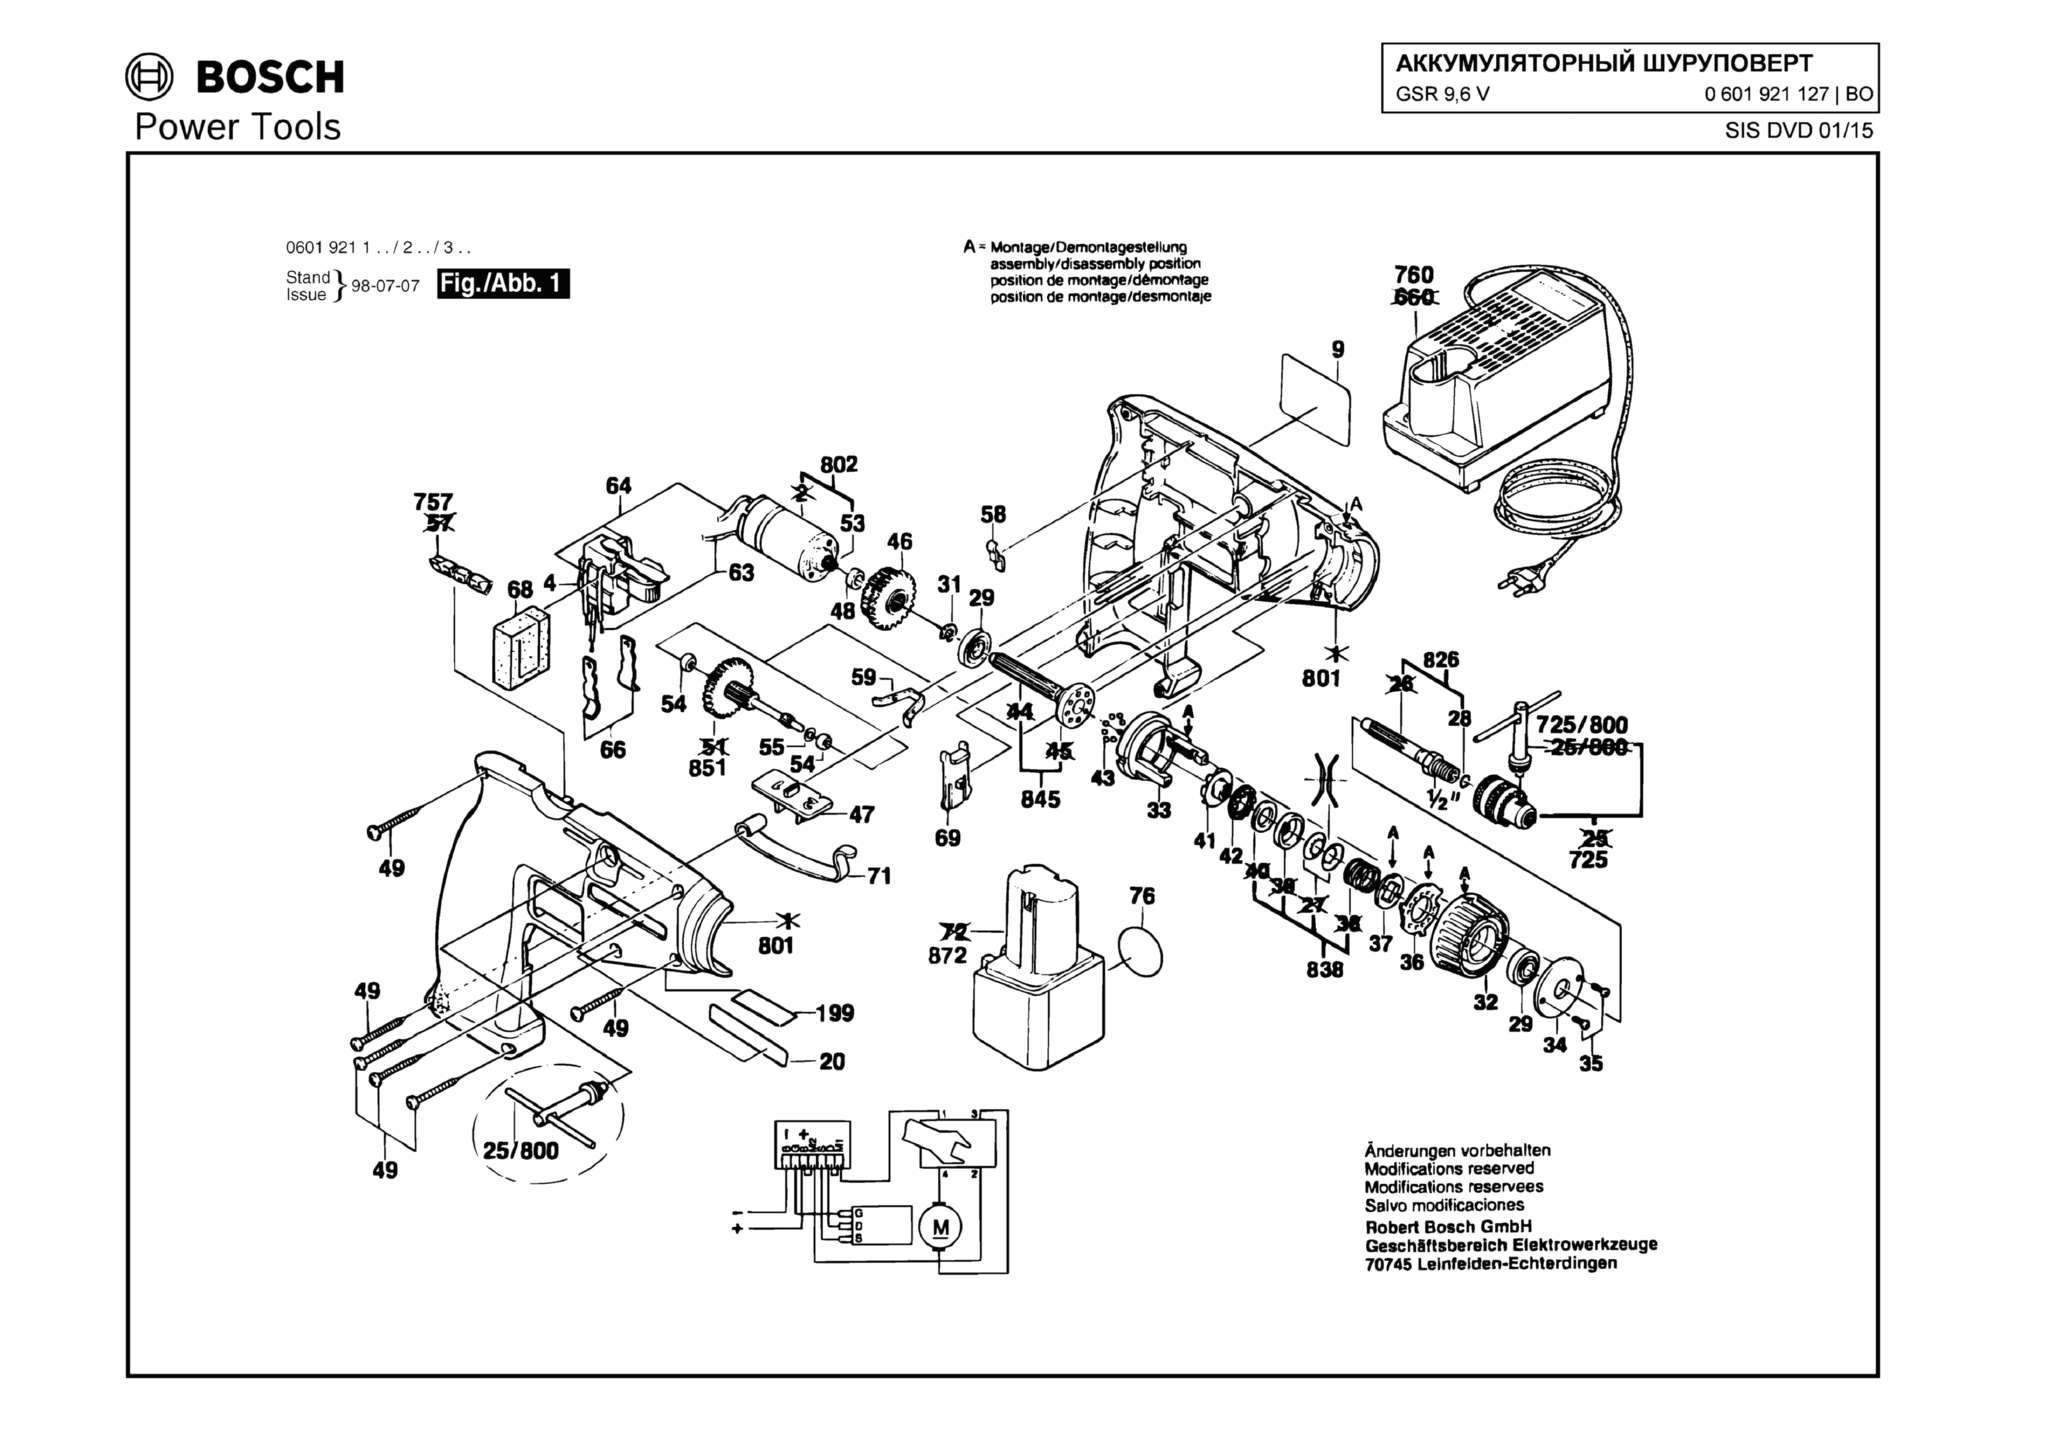 Запчасти, схема и деталировка Bosch GSR 9,6 V (ТИП 0601921127)